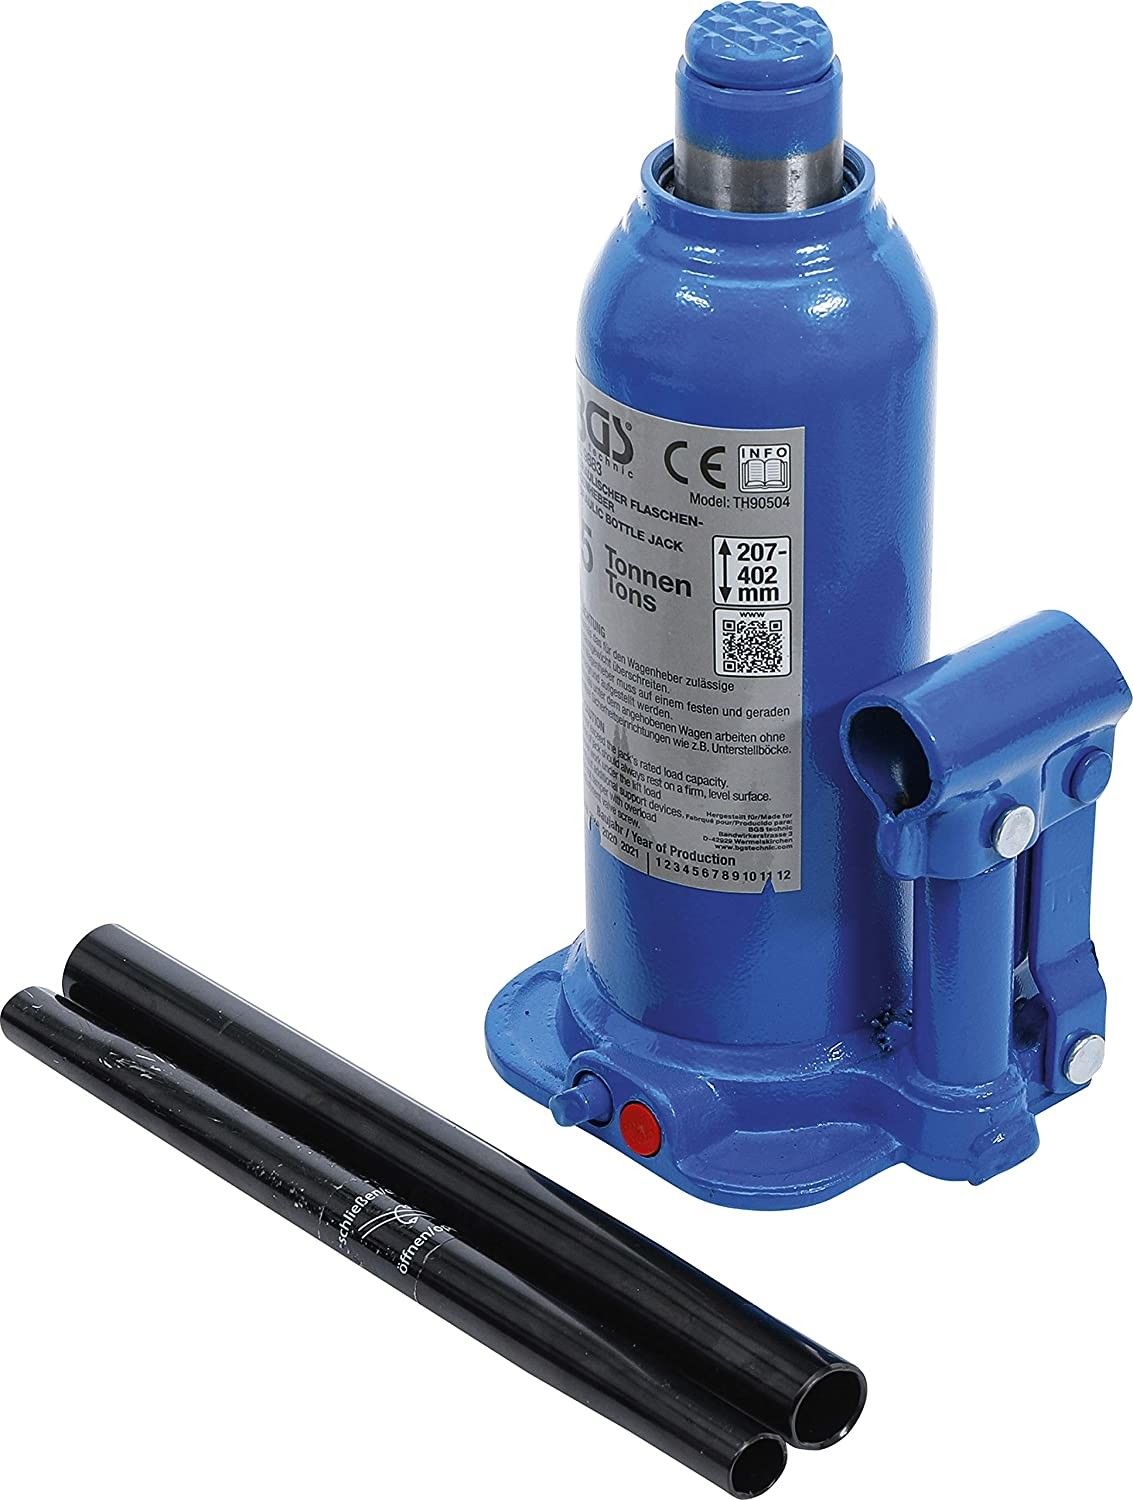 Cricco idraulico a Bottiglia 5000 Kg compatto BGS 9883